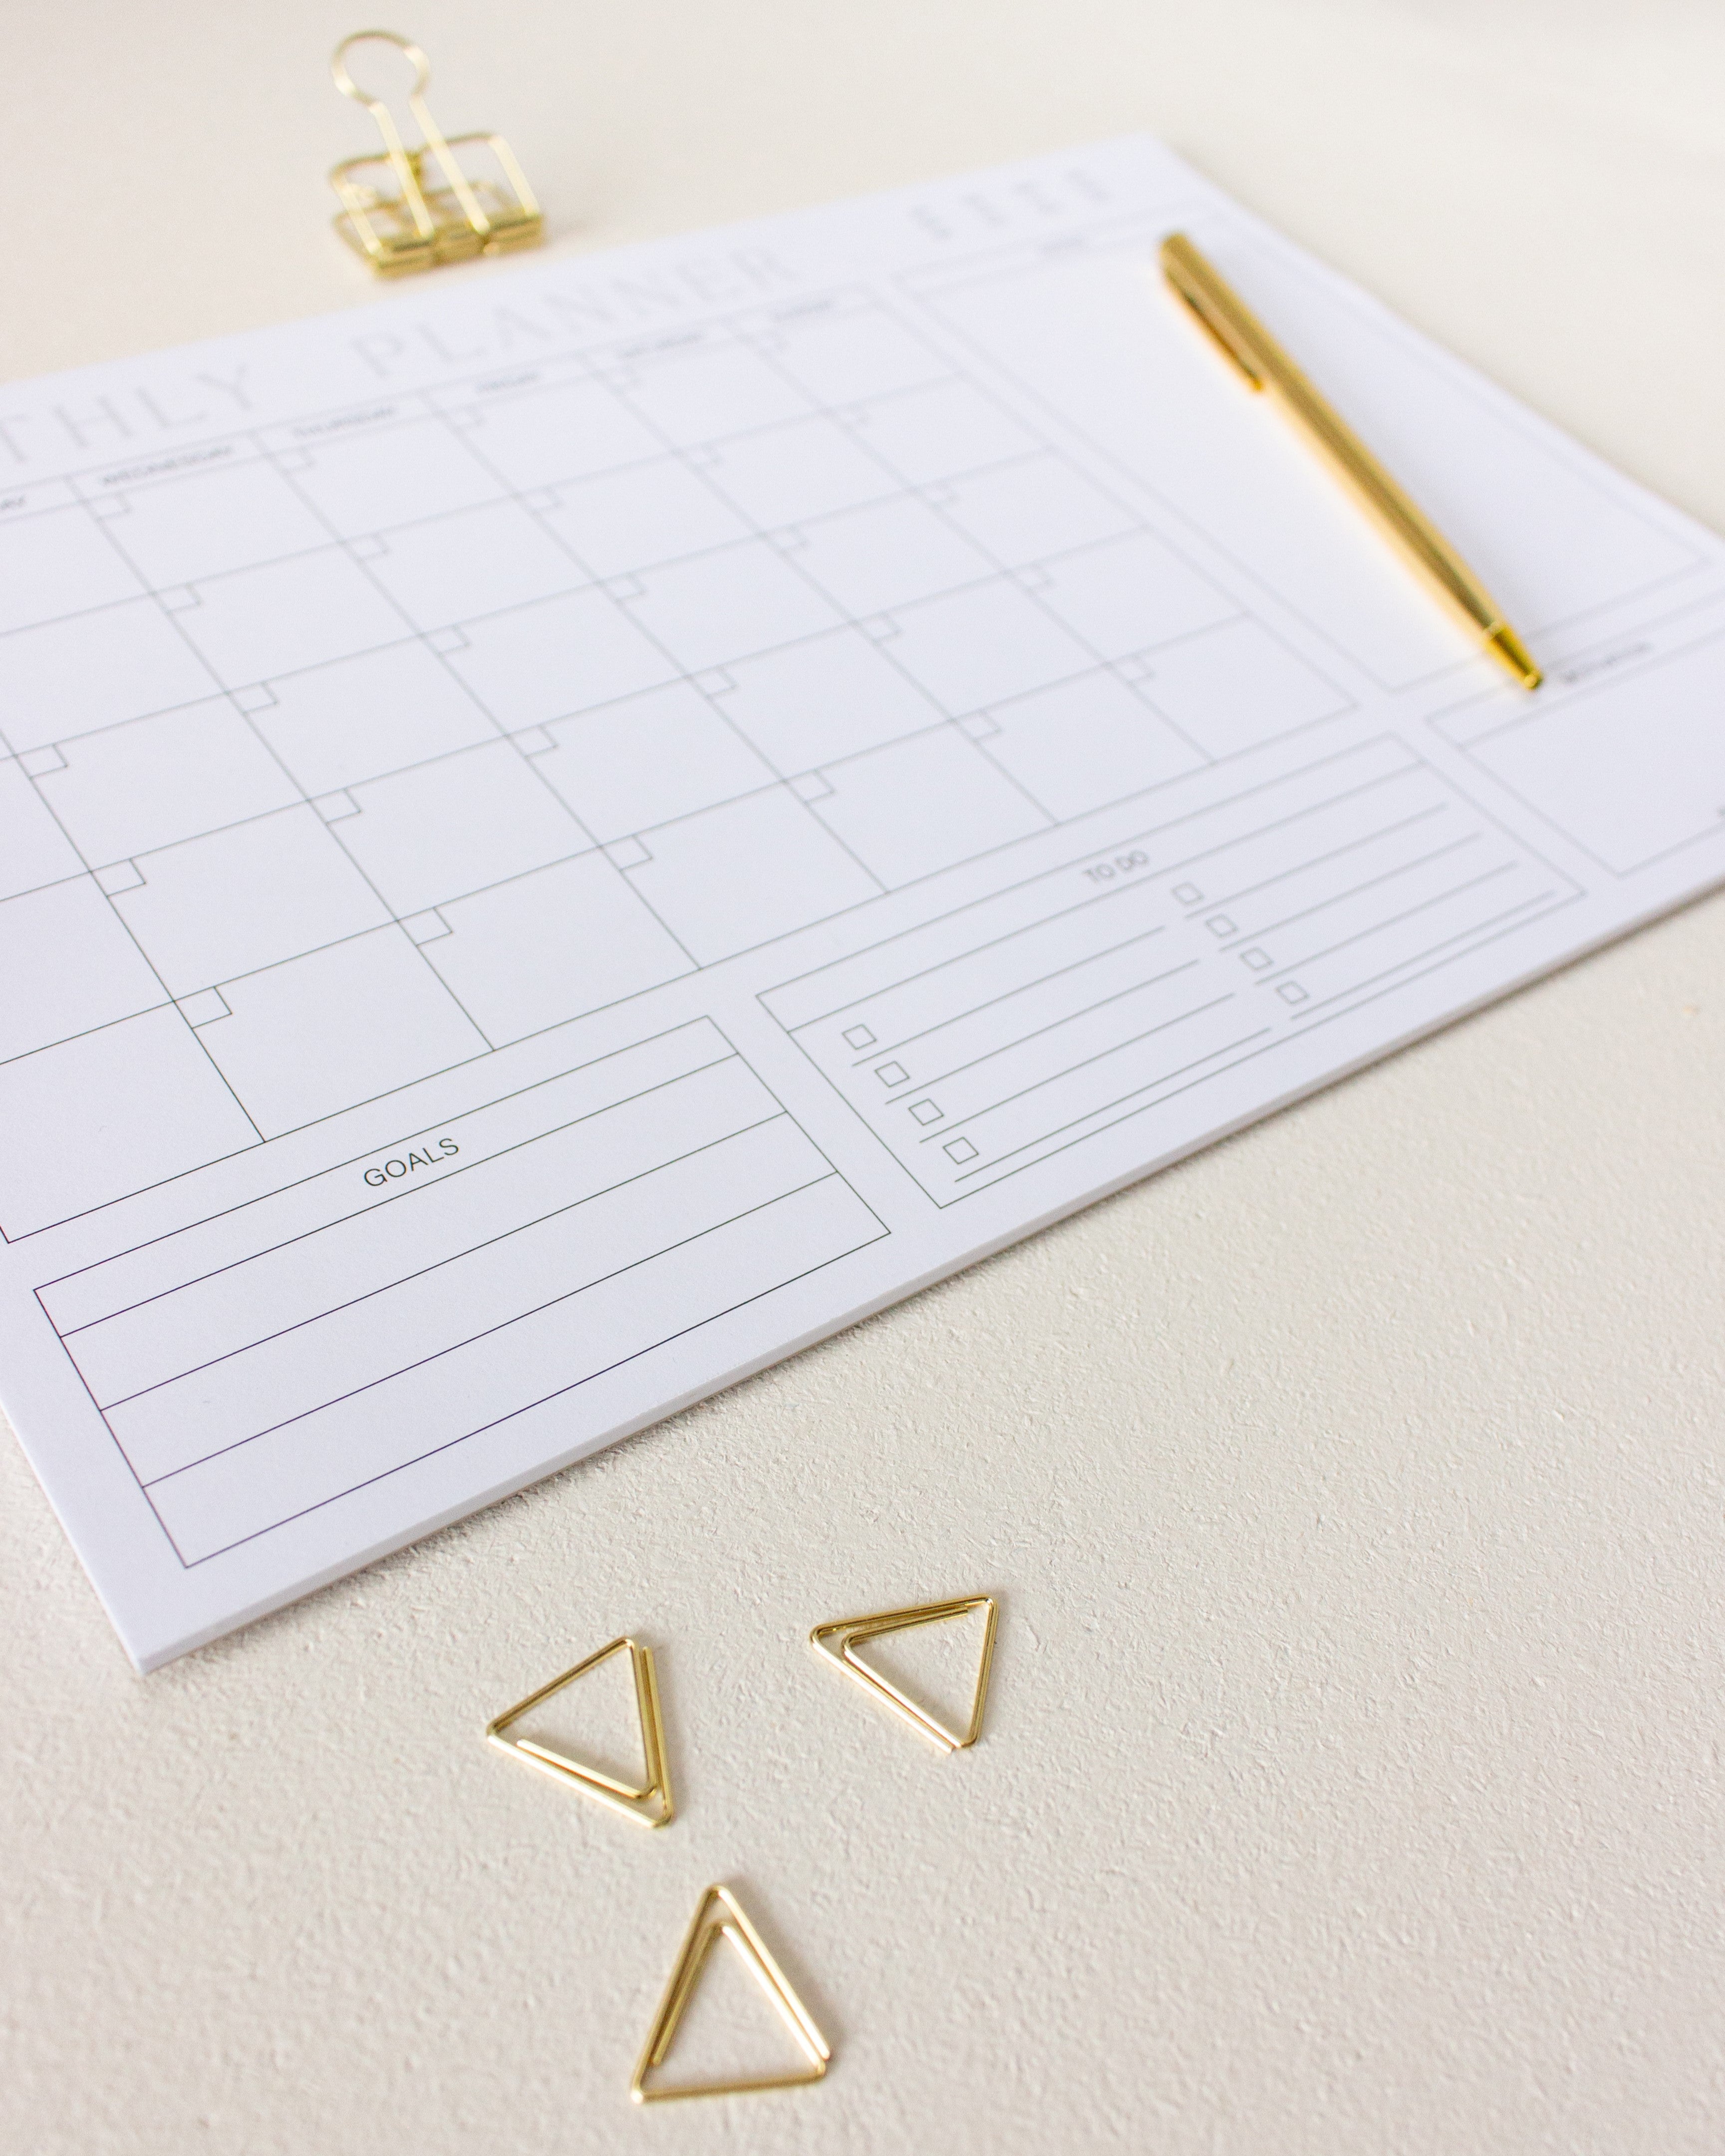 Undatierter Monatsplaner DIN A4 Schreibtischunterlage mit goldenem Kugelschreiber, goldener Foldbackklammer und goldenen dreieckigen Büroklammern auf hell-beigem Untergrund.